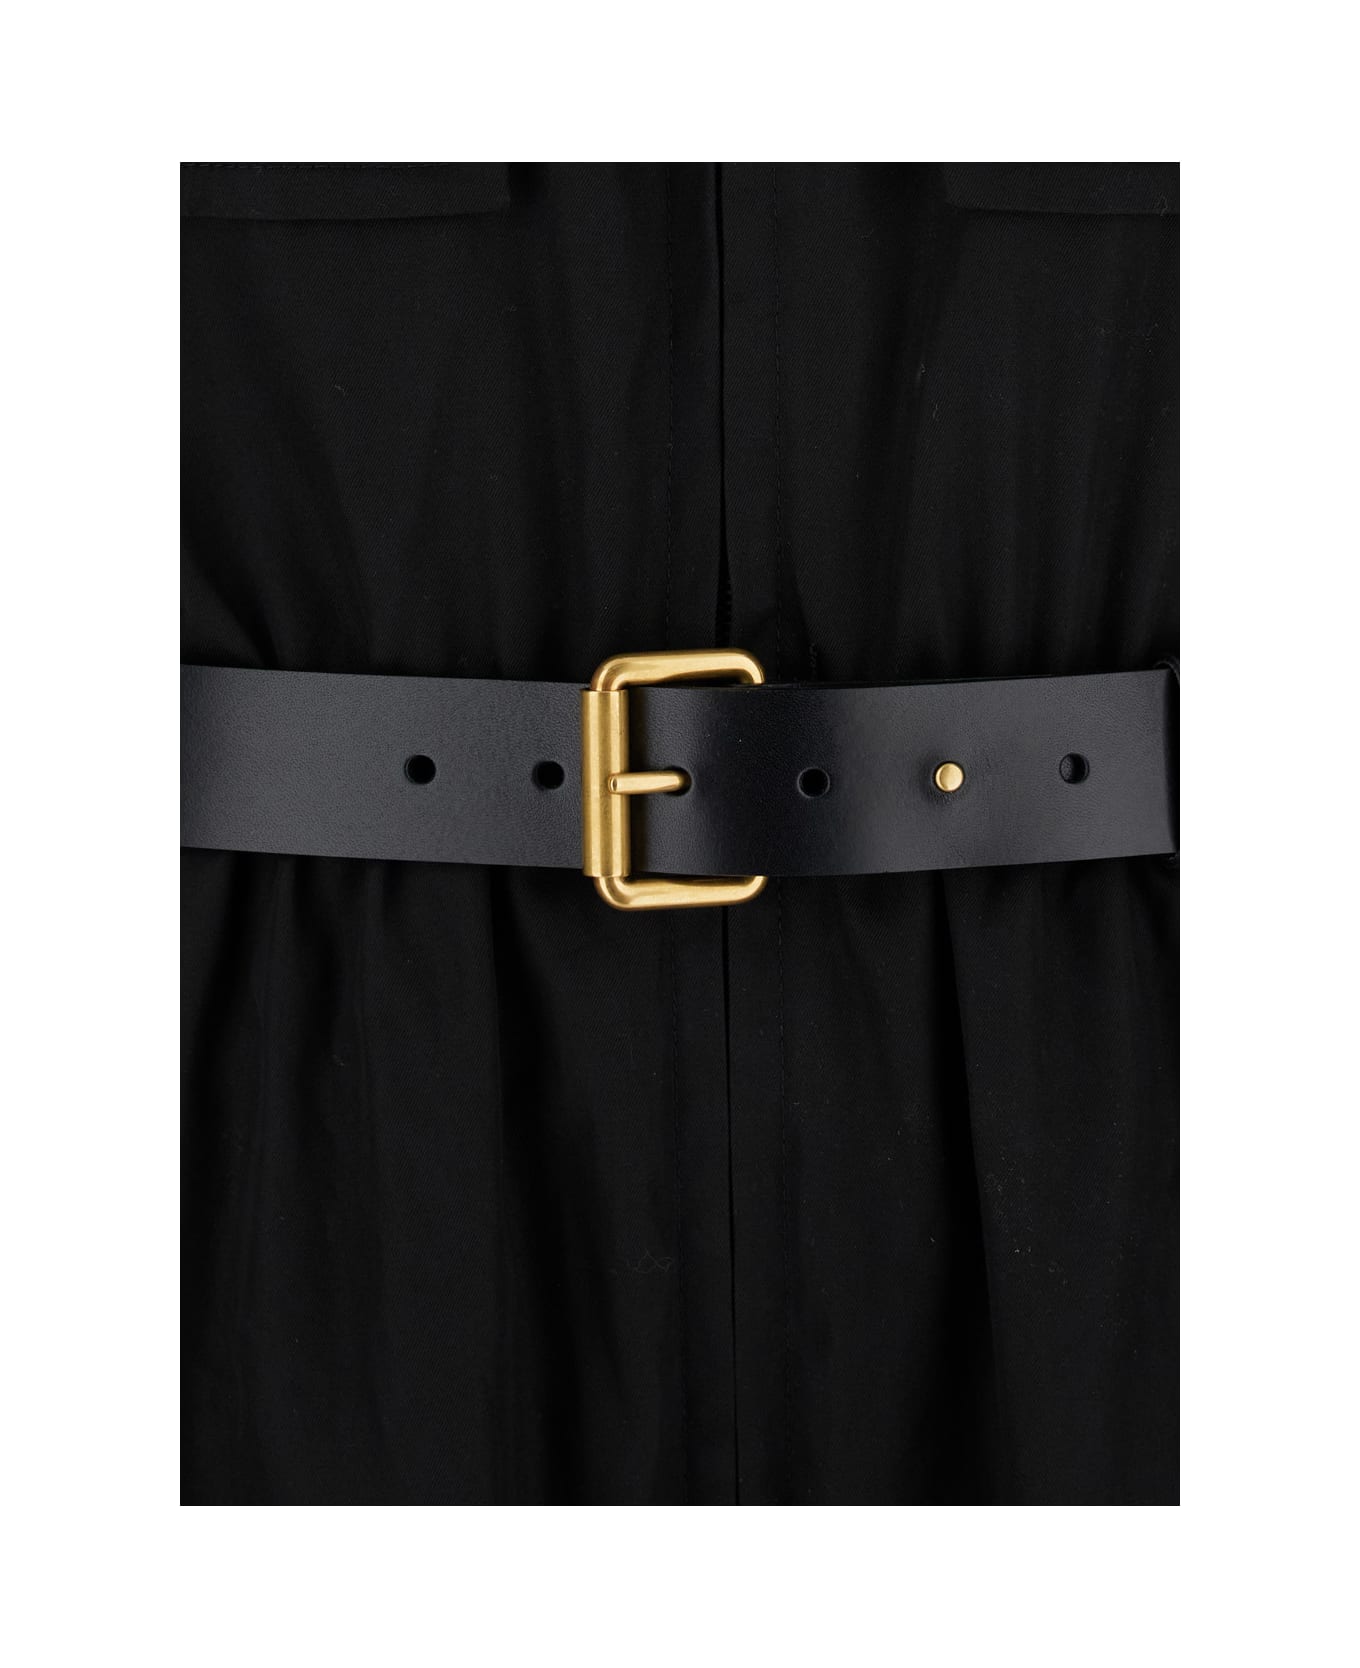 Saint Laurent Black Jumpsuit With Pockets And Belt In Cotton Woman - BLACK